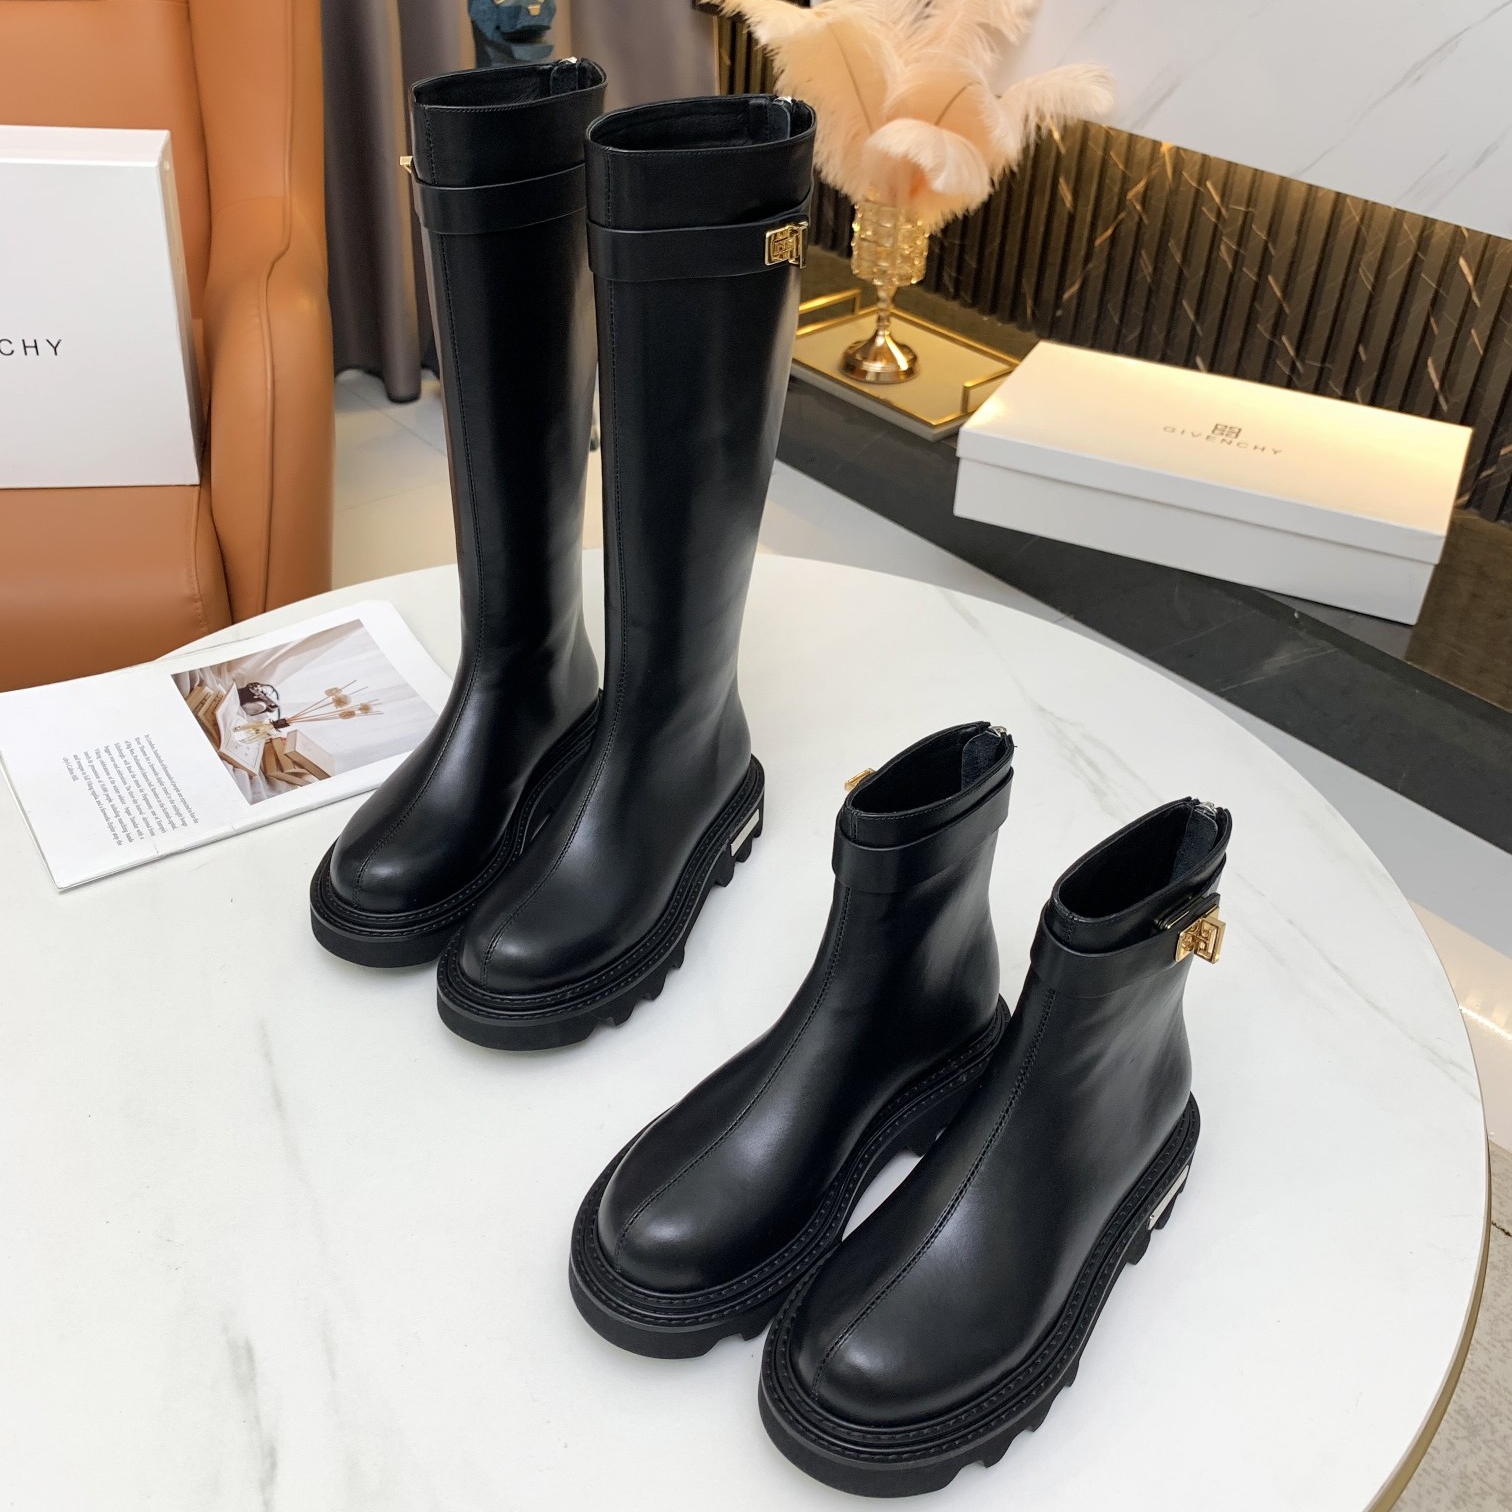 Добро продајни ГивенЦхи модни луксузни познати бренд Милан Фасхион Веек женске брендиране ципеле и лажне дизајнерске ципеле такође брендиране штикле